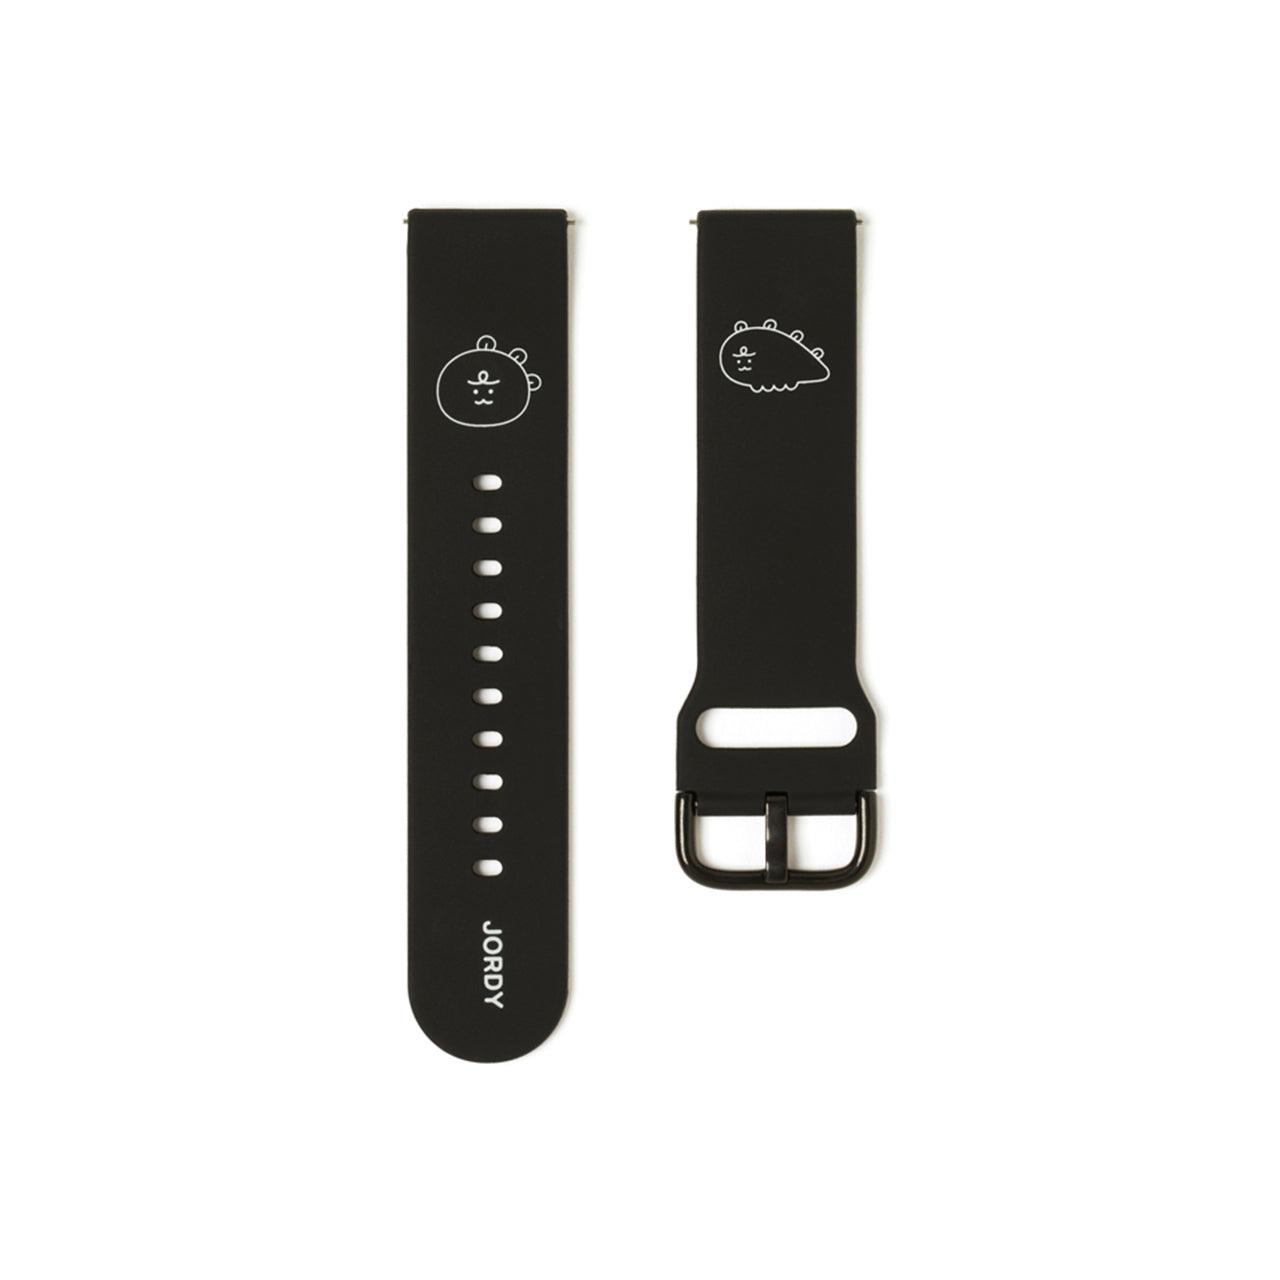 Kakao Friends Jordy Smart Watch Strap 手錶帶 - SOUL SIMPLE HK